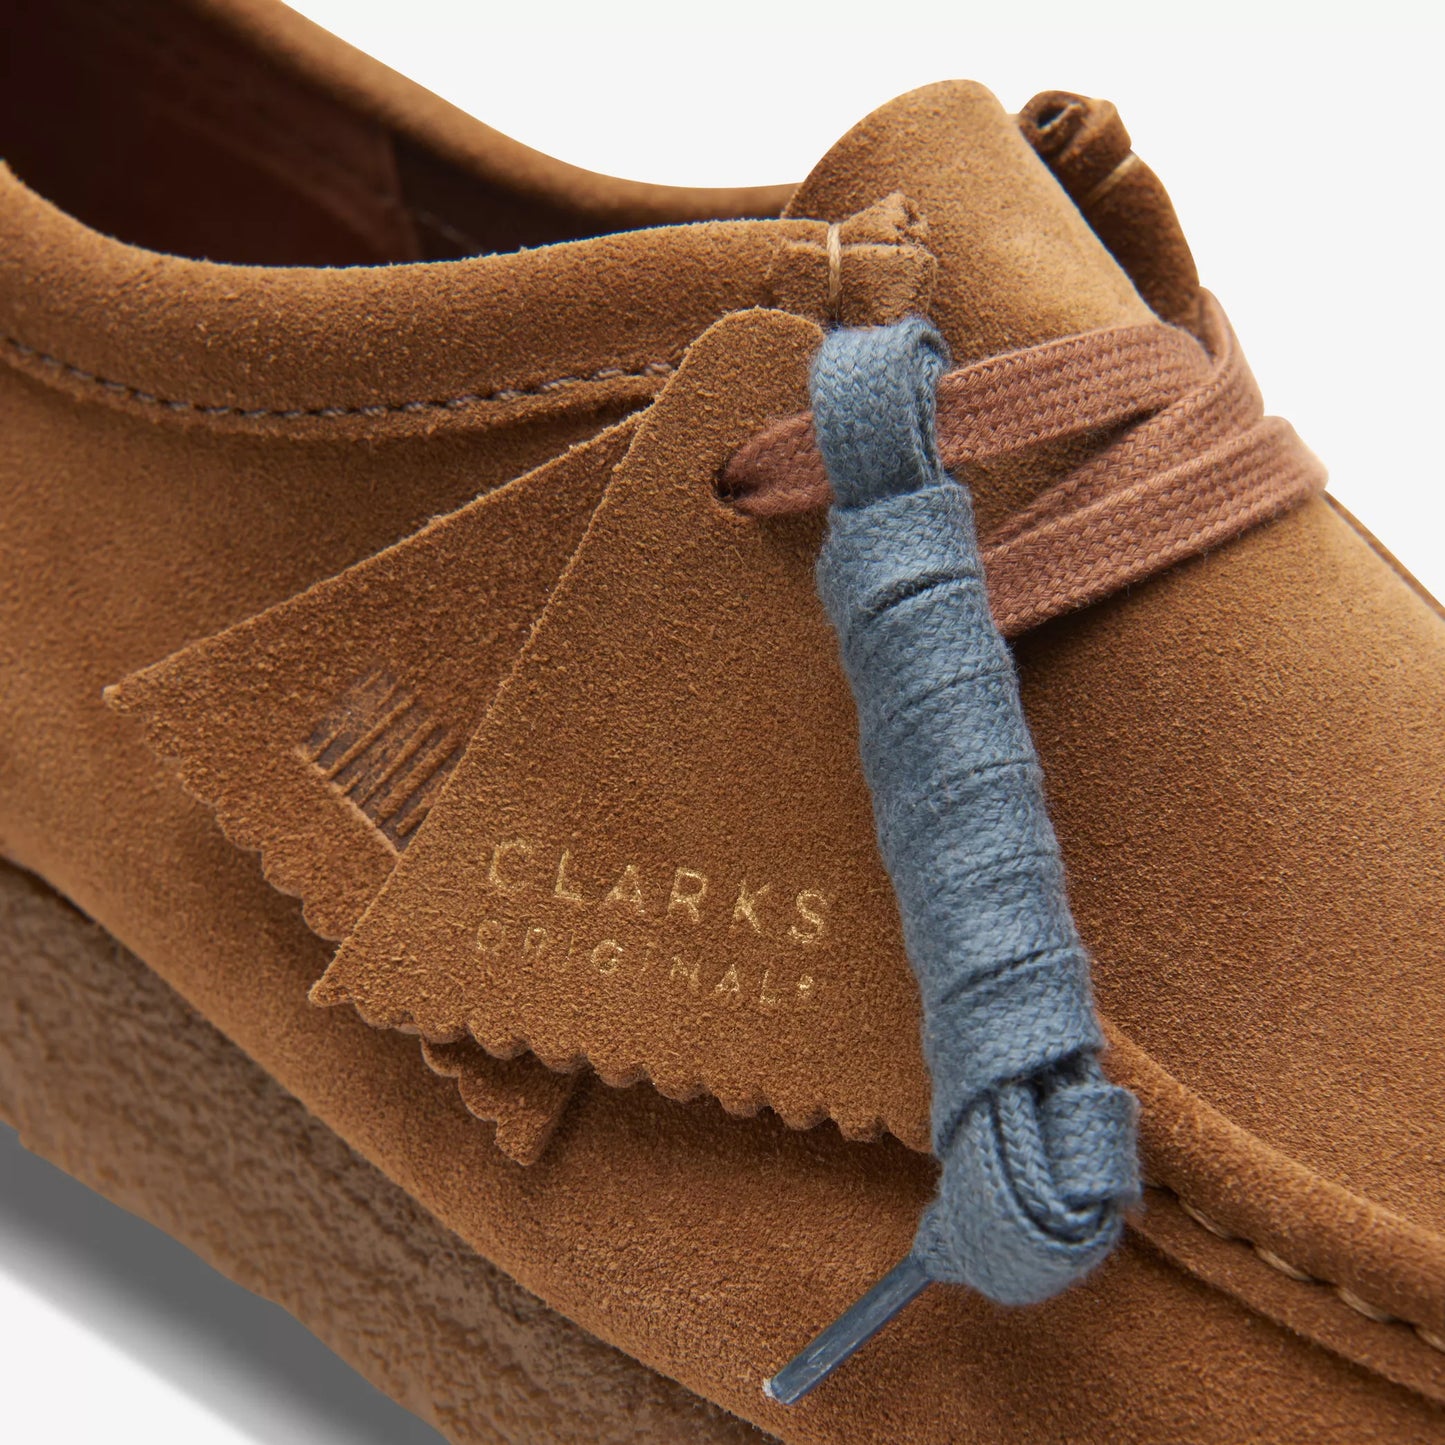 CLARKS Wallabee Shoe Suede Cola - Image 7